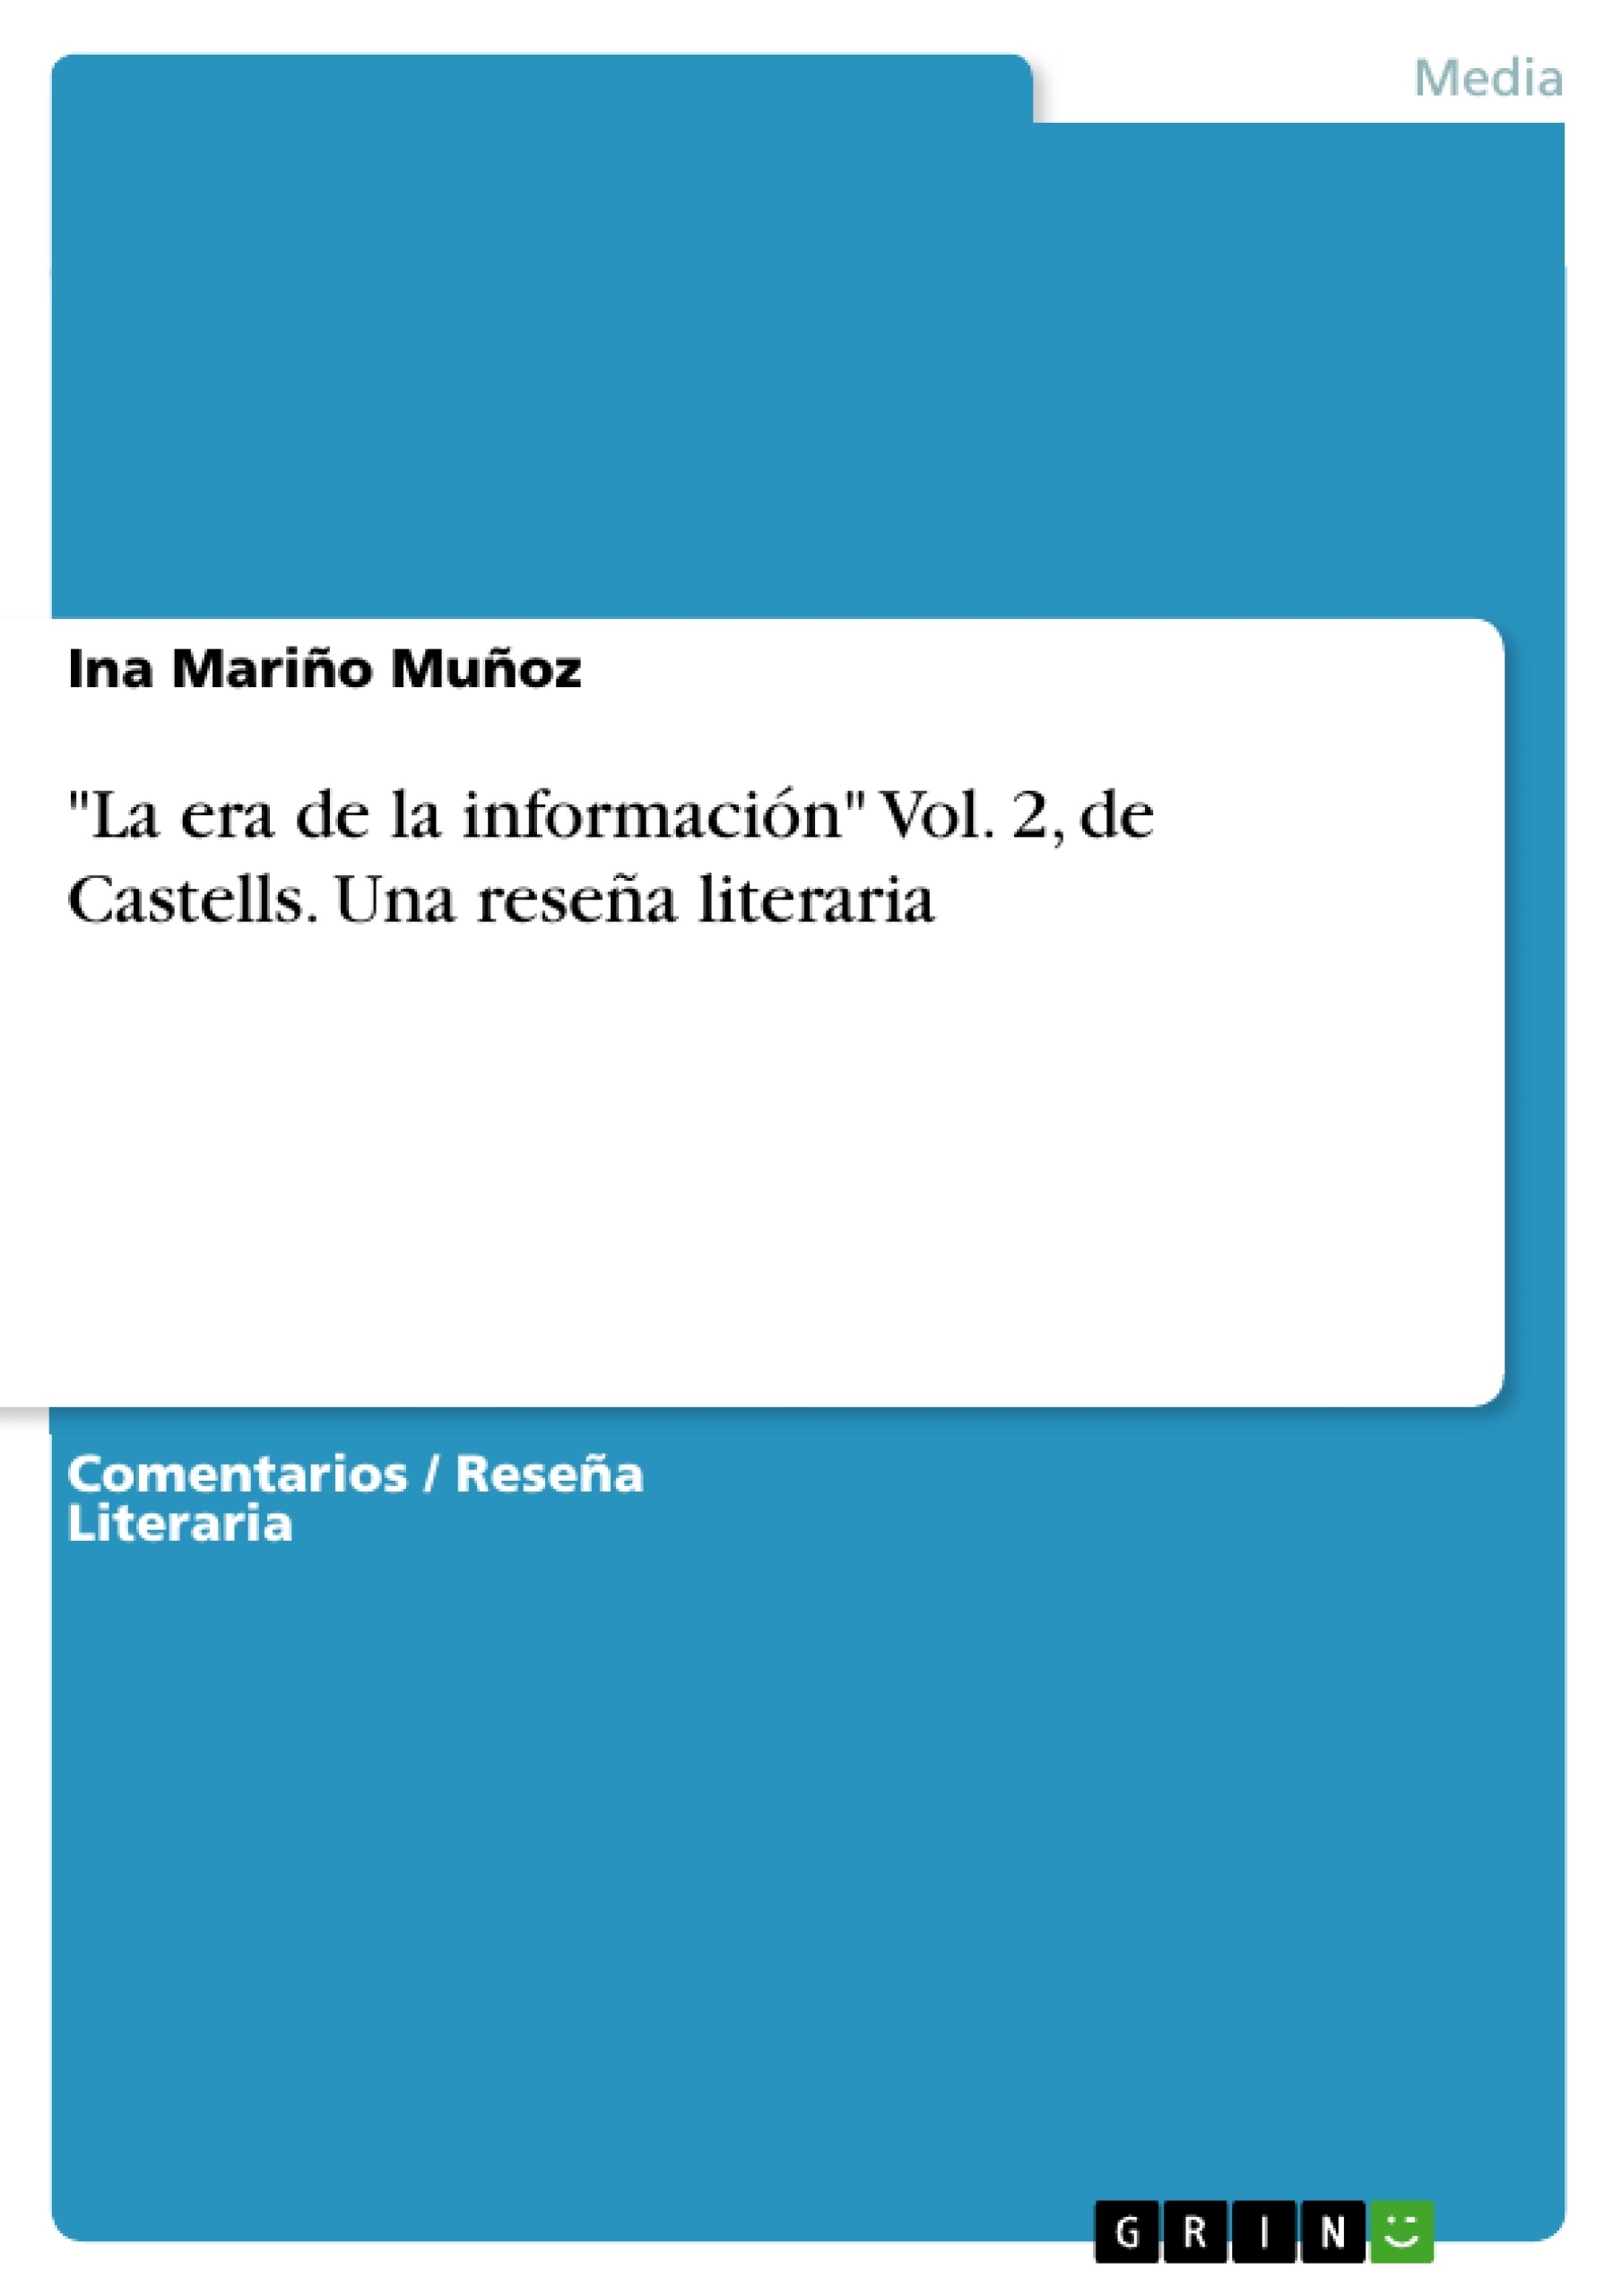 Título: "La era de la información" Vol. 2, de Castells. Una reseña literaria